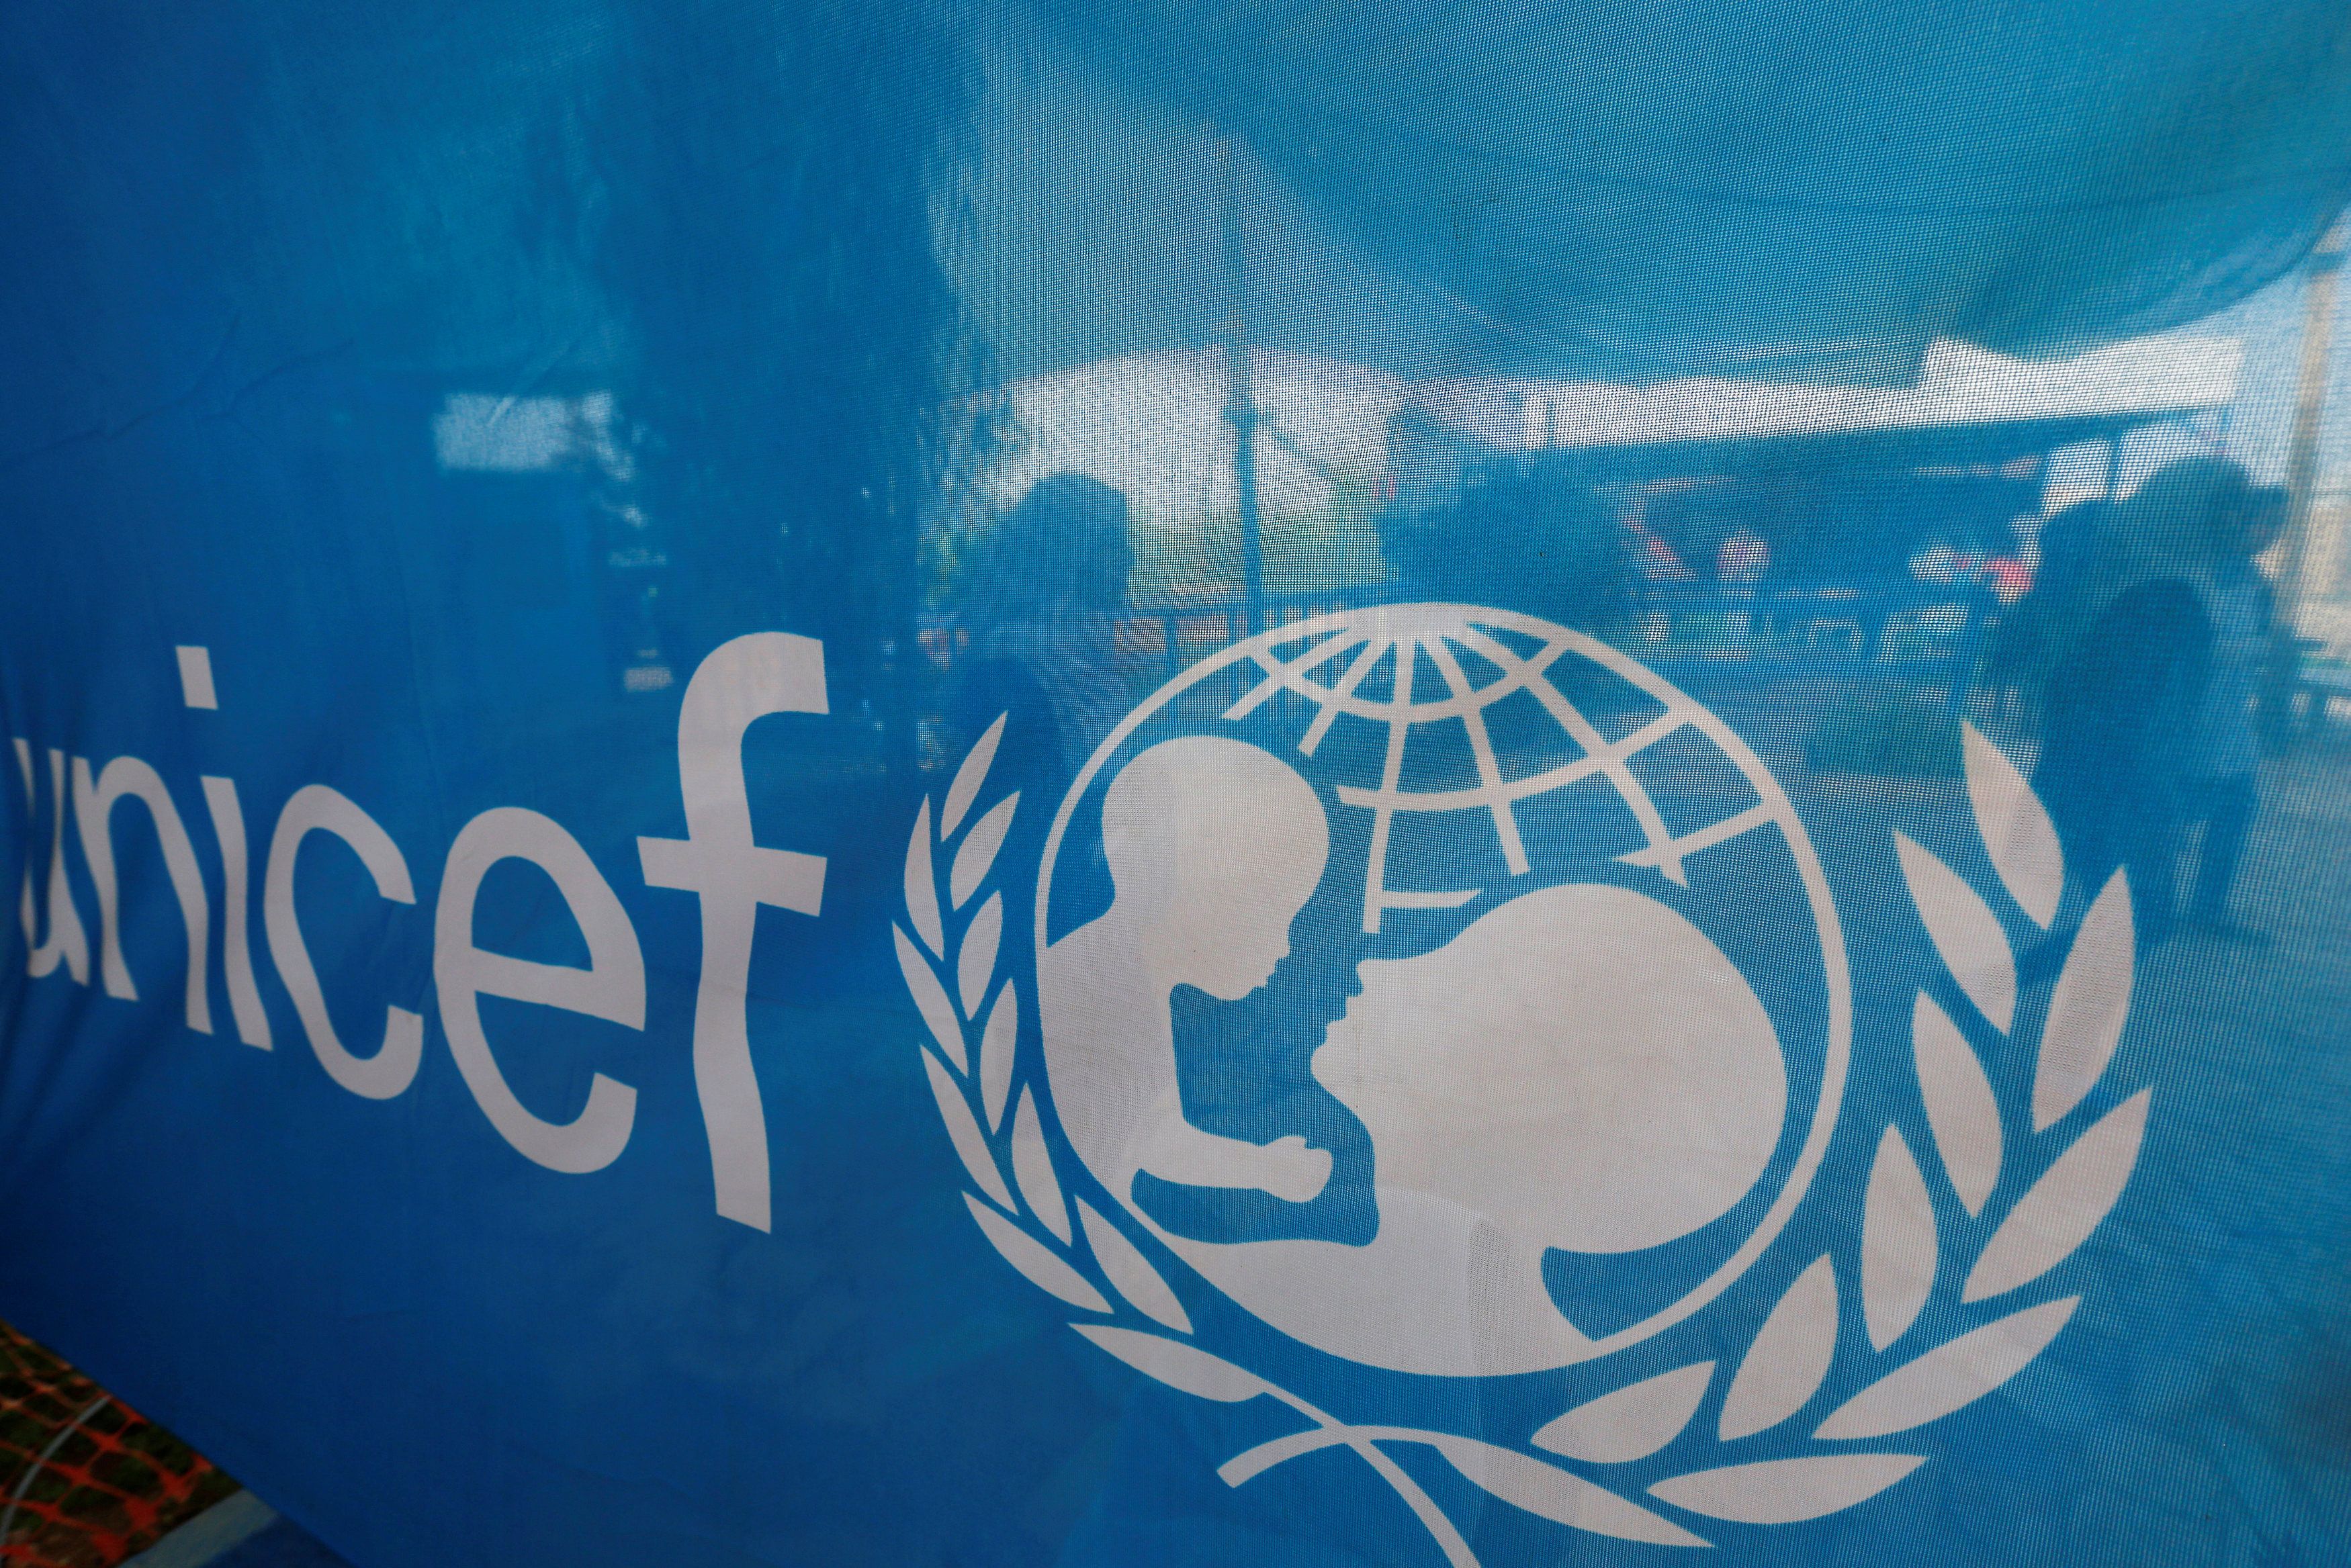 La Unicef fue fundada el 11 de diciembre de 1946 y actualmente mantiene sus funciones en 190 países.